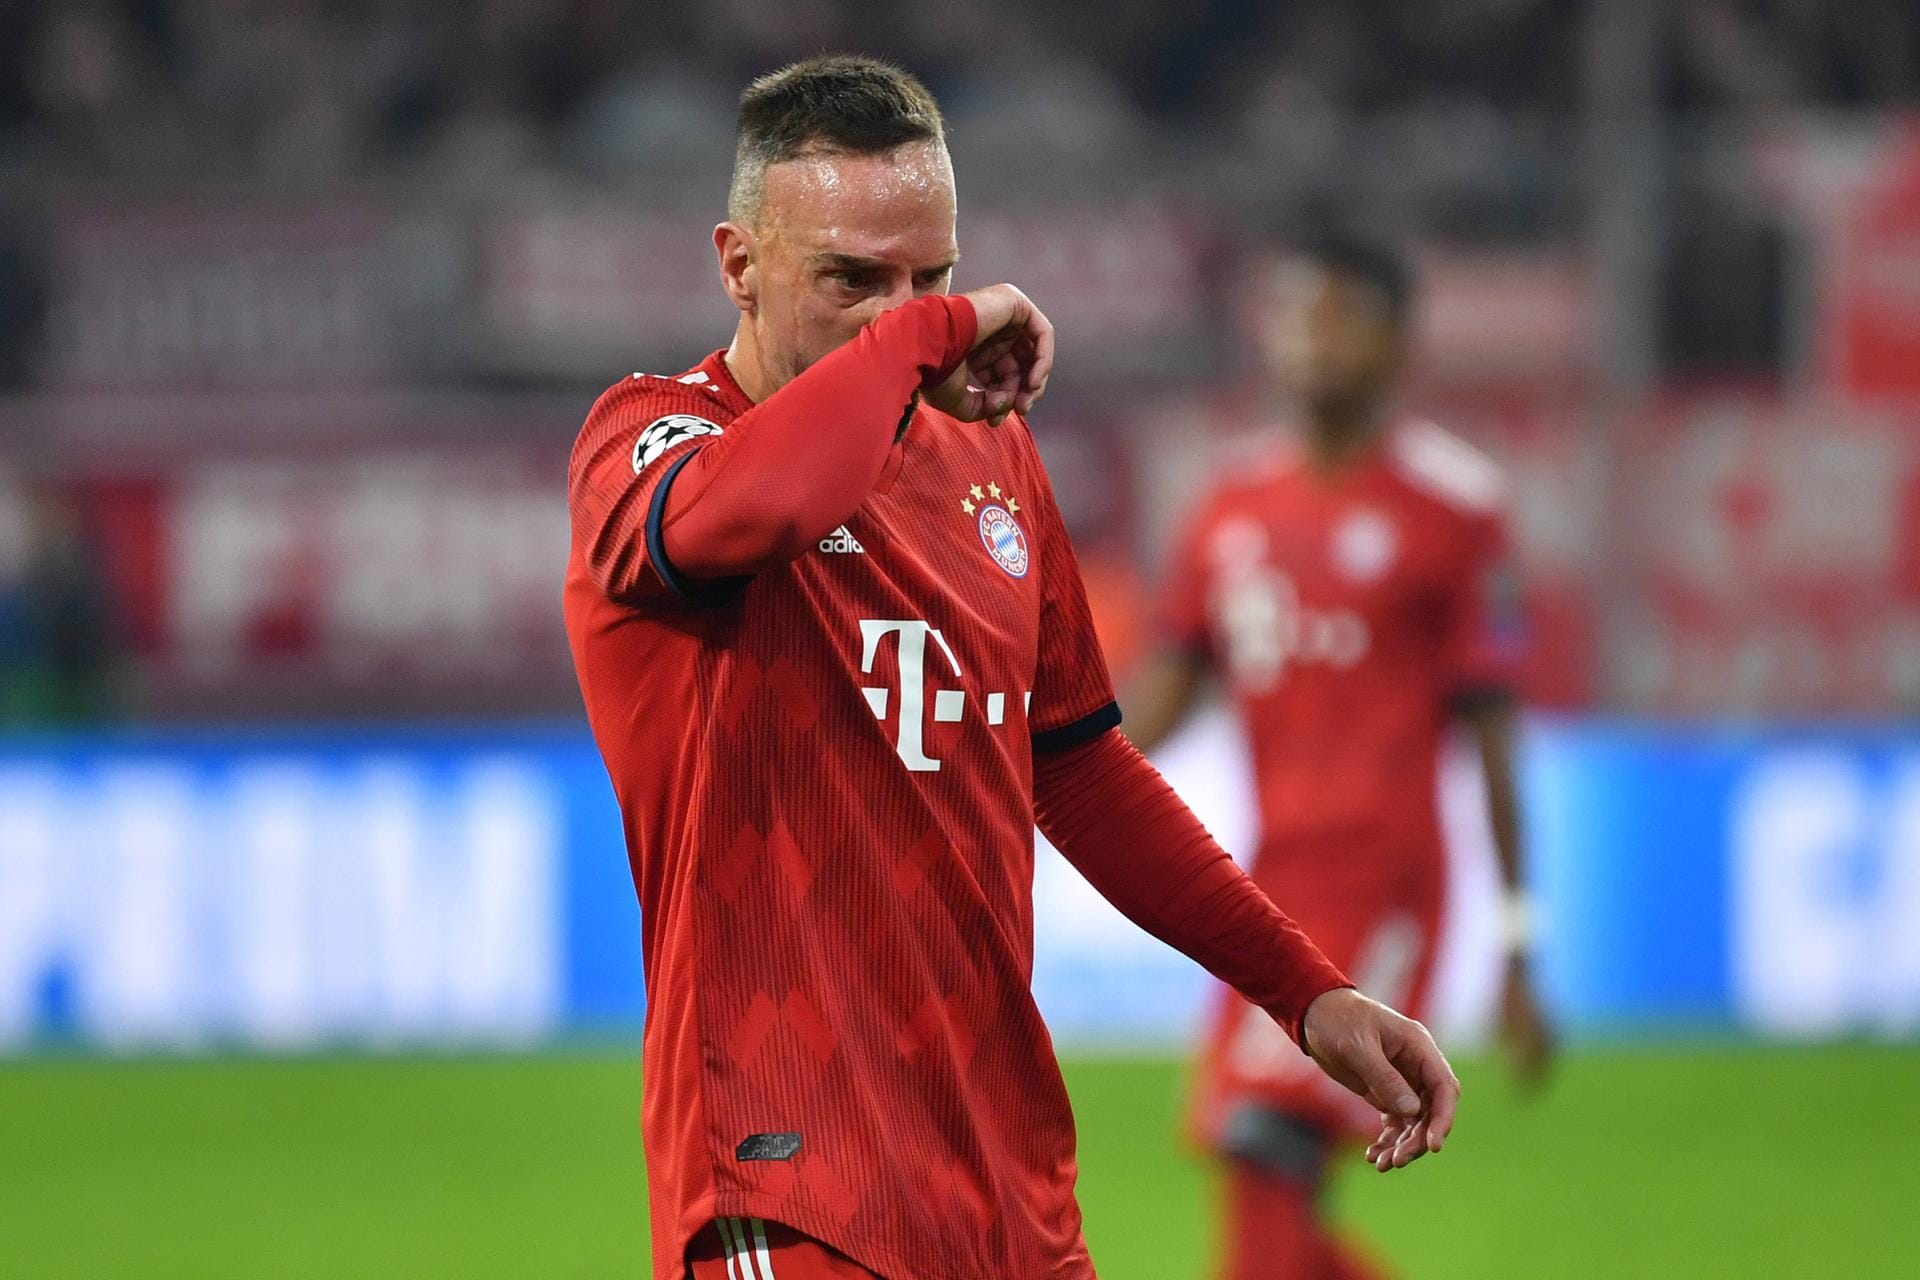 Nach der 2:3-Niederlage in Dortmund soll Franck Ribéry gegenüber einem TV-Experten handgreiflich geworden sein. Nicht der erste Ausraster des Franzosen.